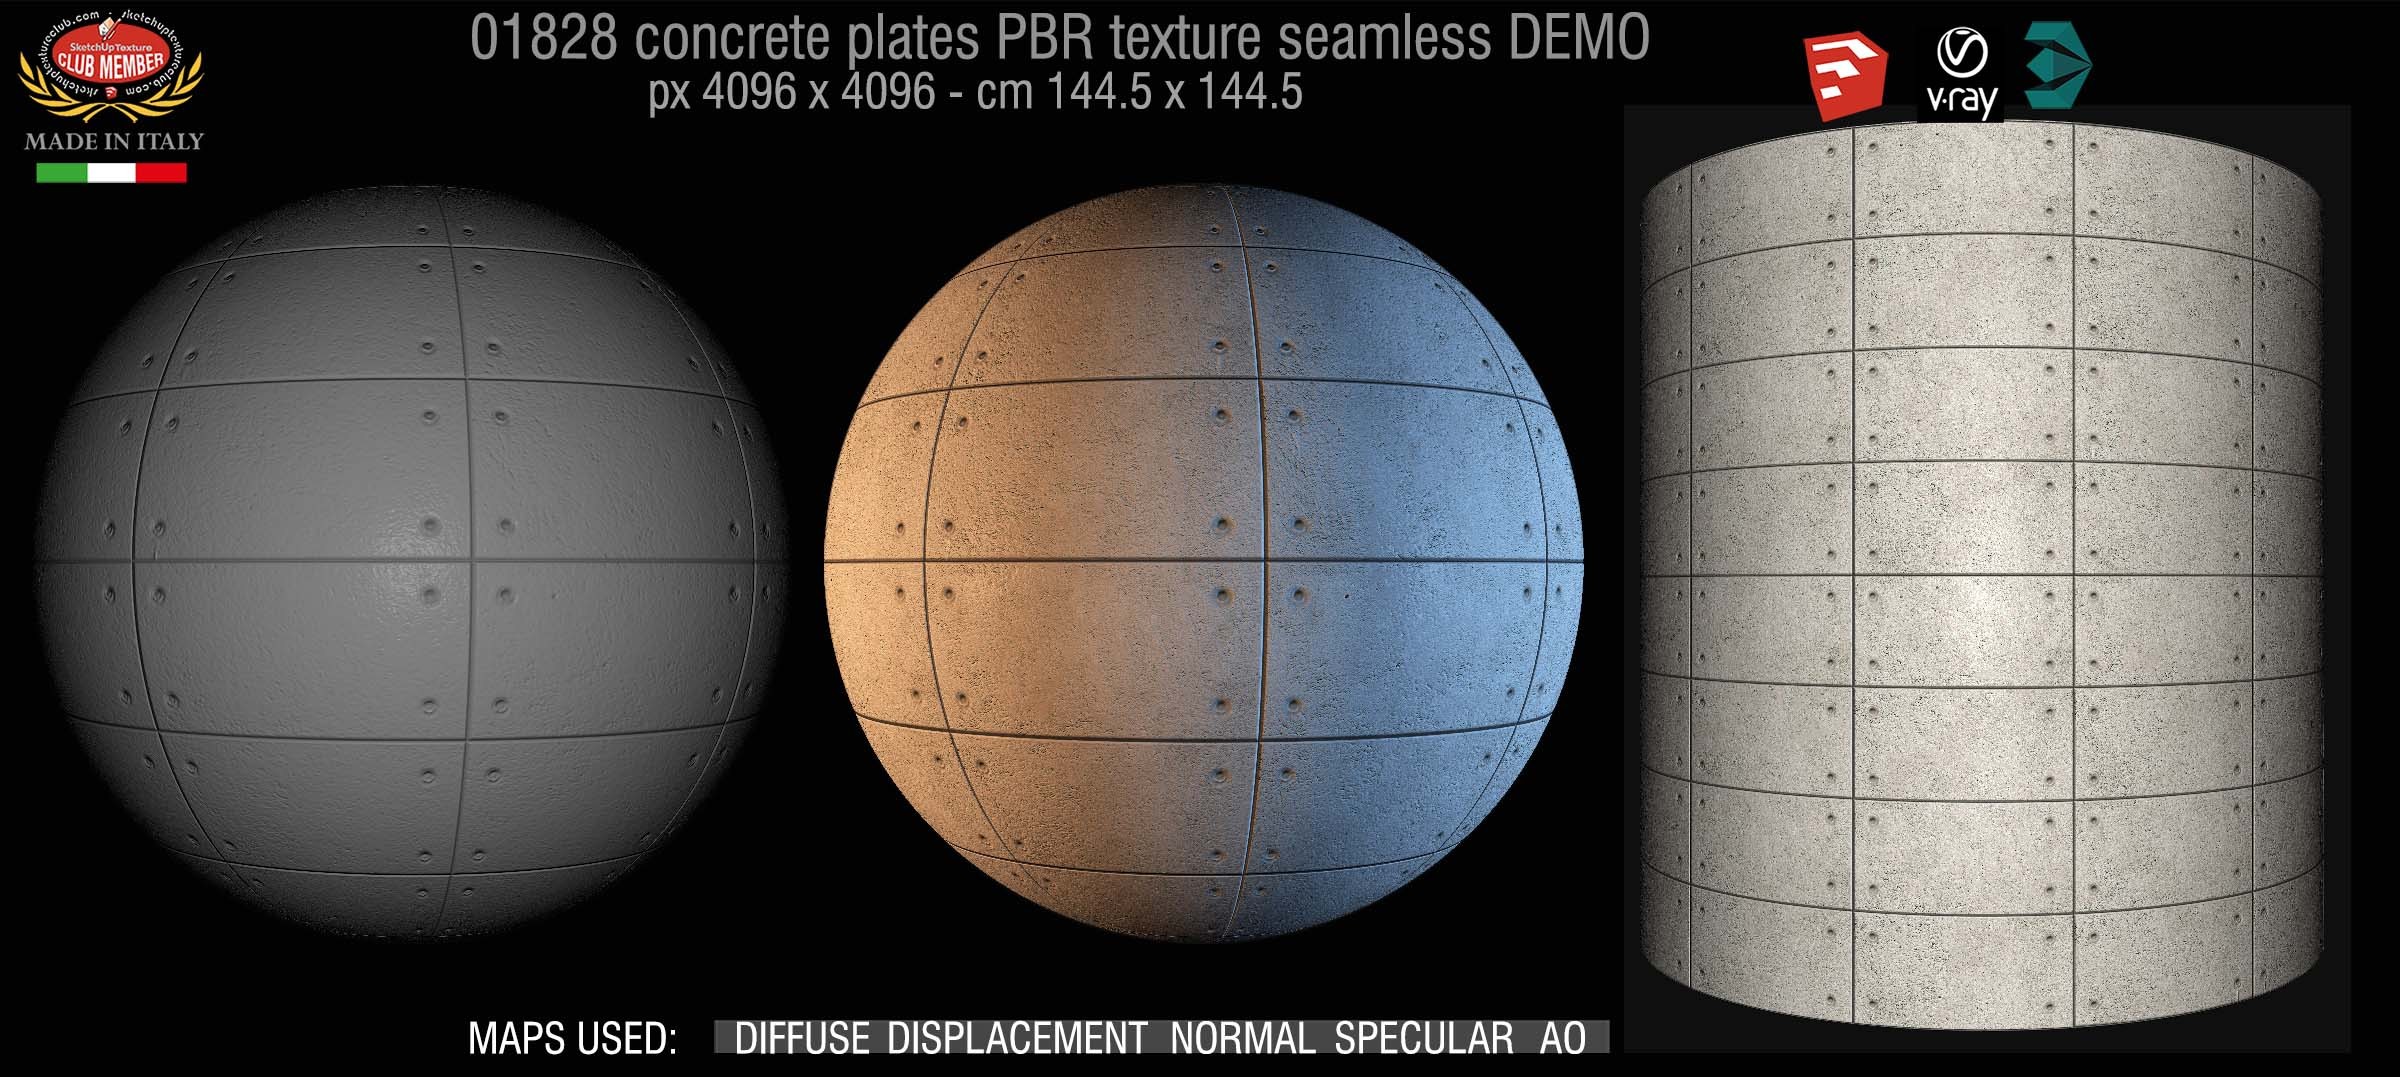 01828 Tadao Ando concrete plates PBR texture seamless DEMO